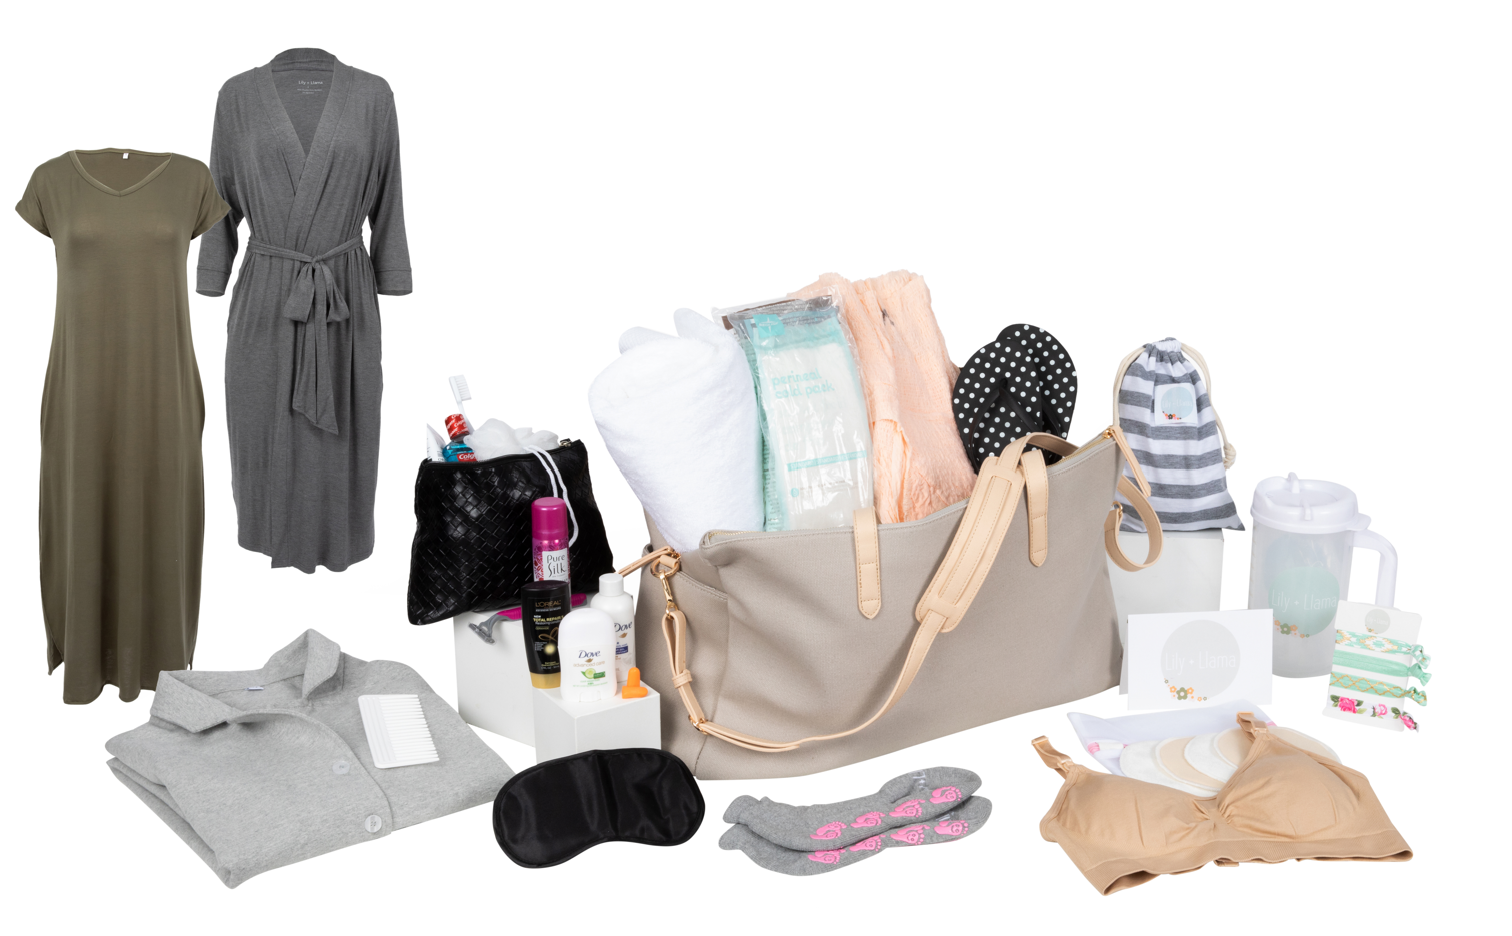 Baby nappy changing bag set 5pcs mummy maternity hospital bag uk | eBay